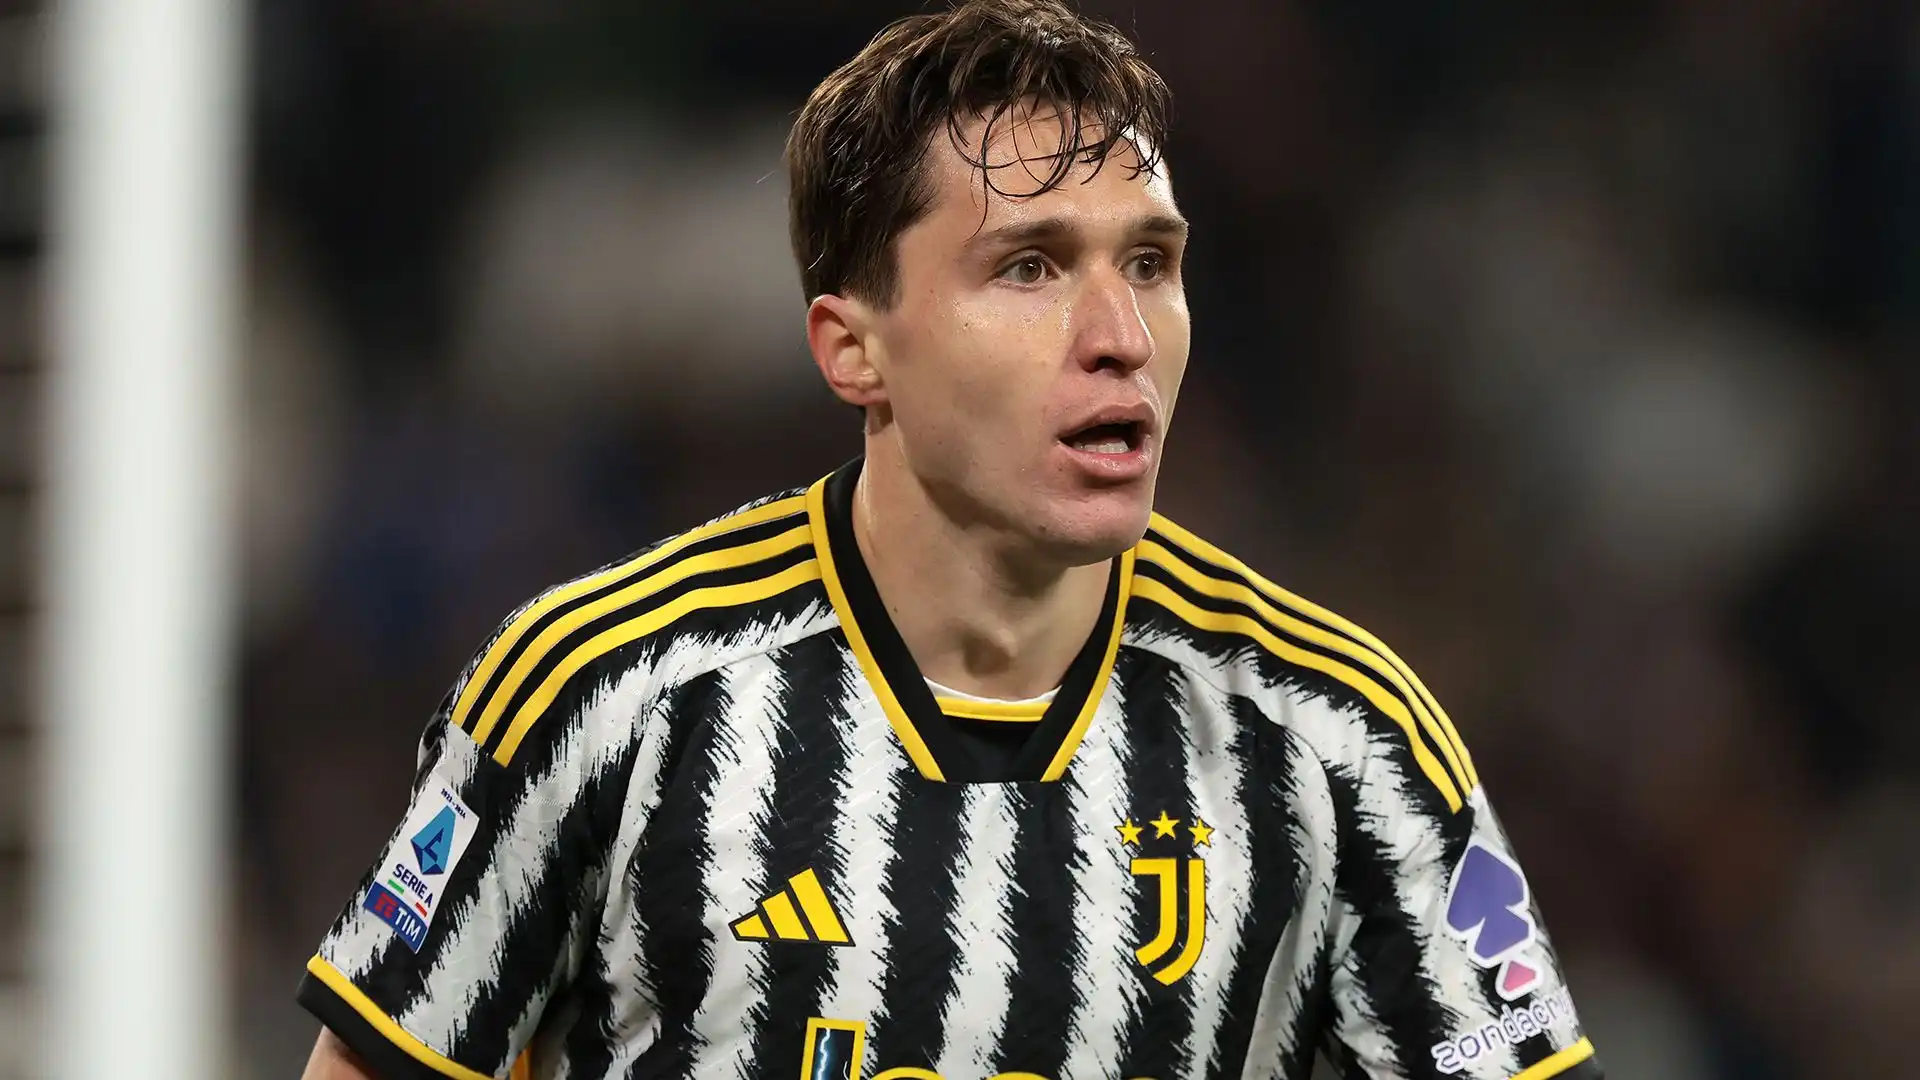 Con ogni probabilità Chiesa lascerà la Juventus in estate, ma potrebbe restare in Italia